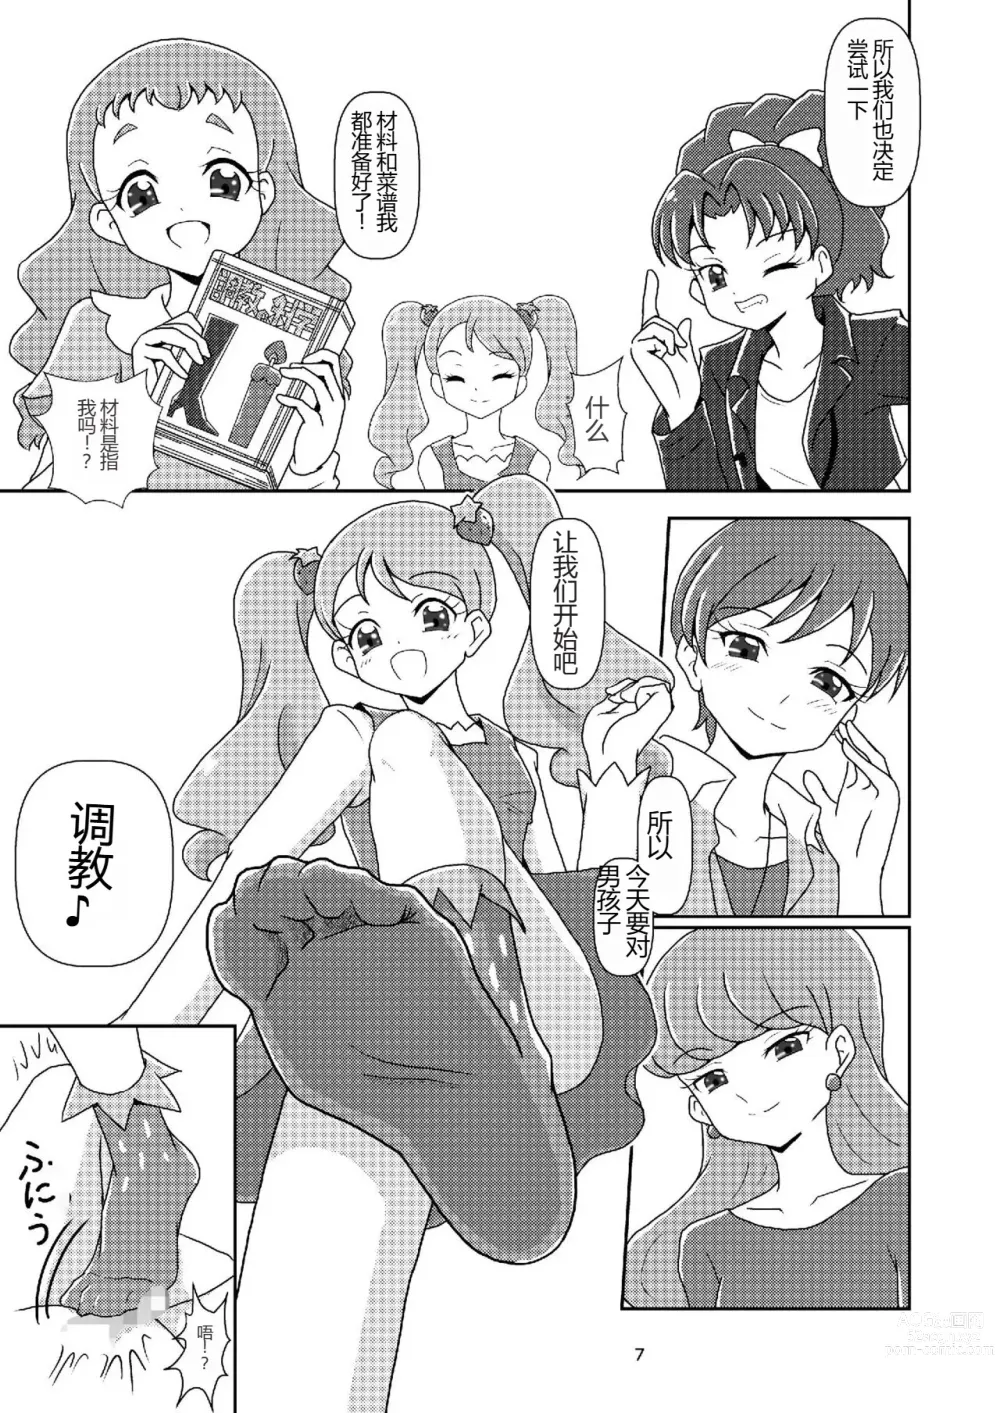 Page 6 of doujinshi Kirakira Zuricure Ashi Mode